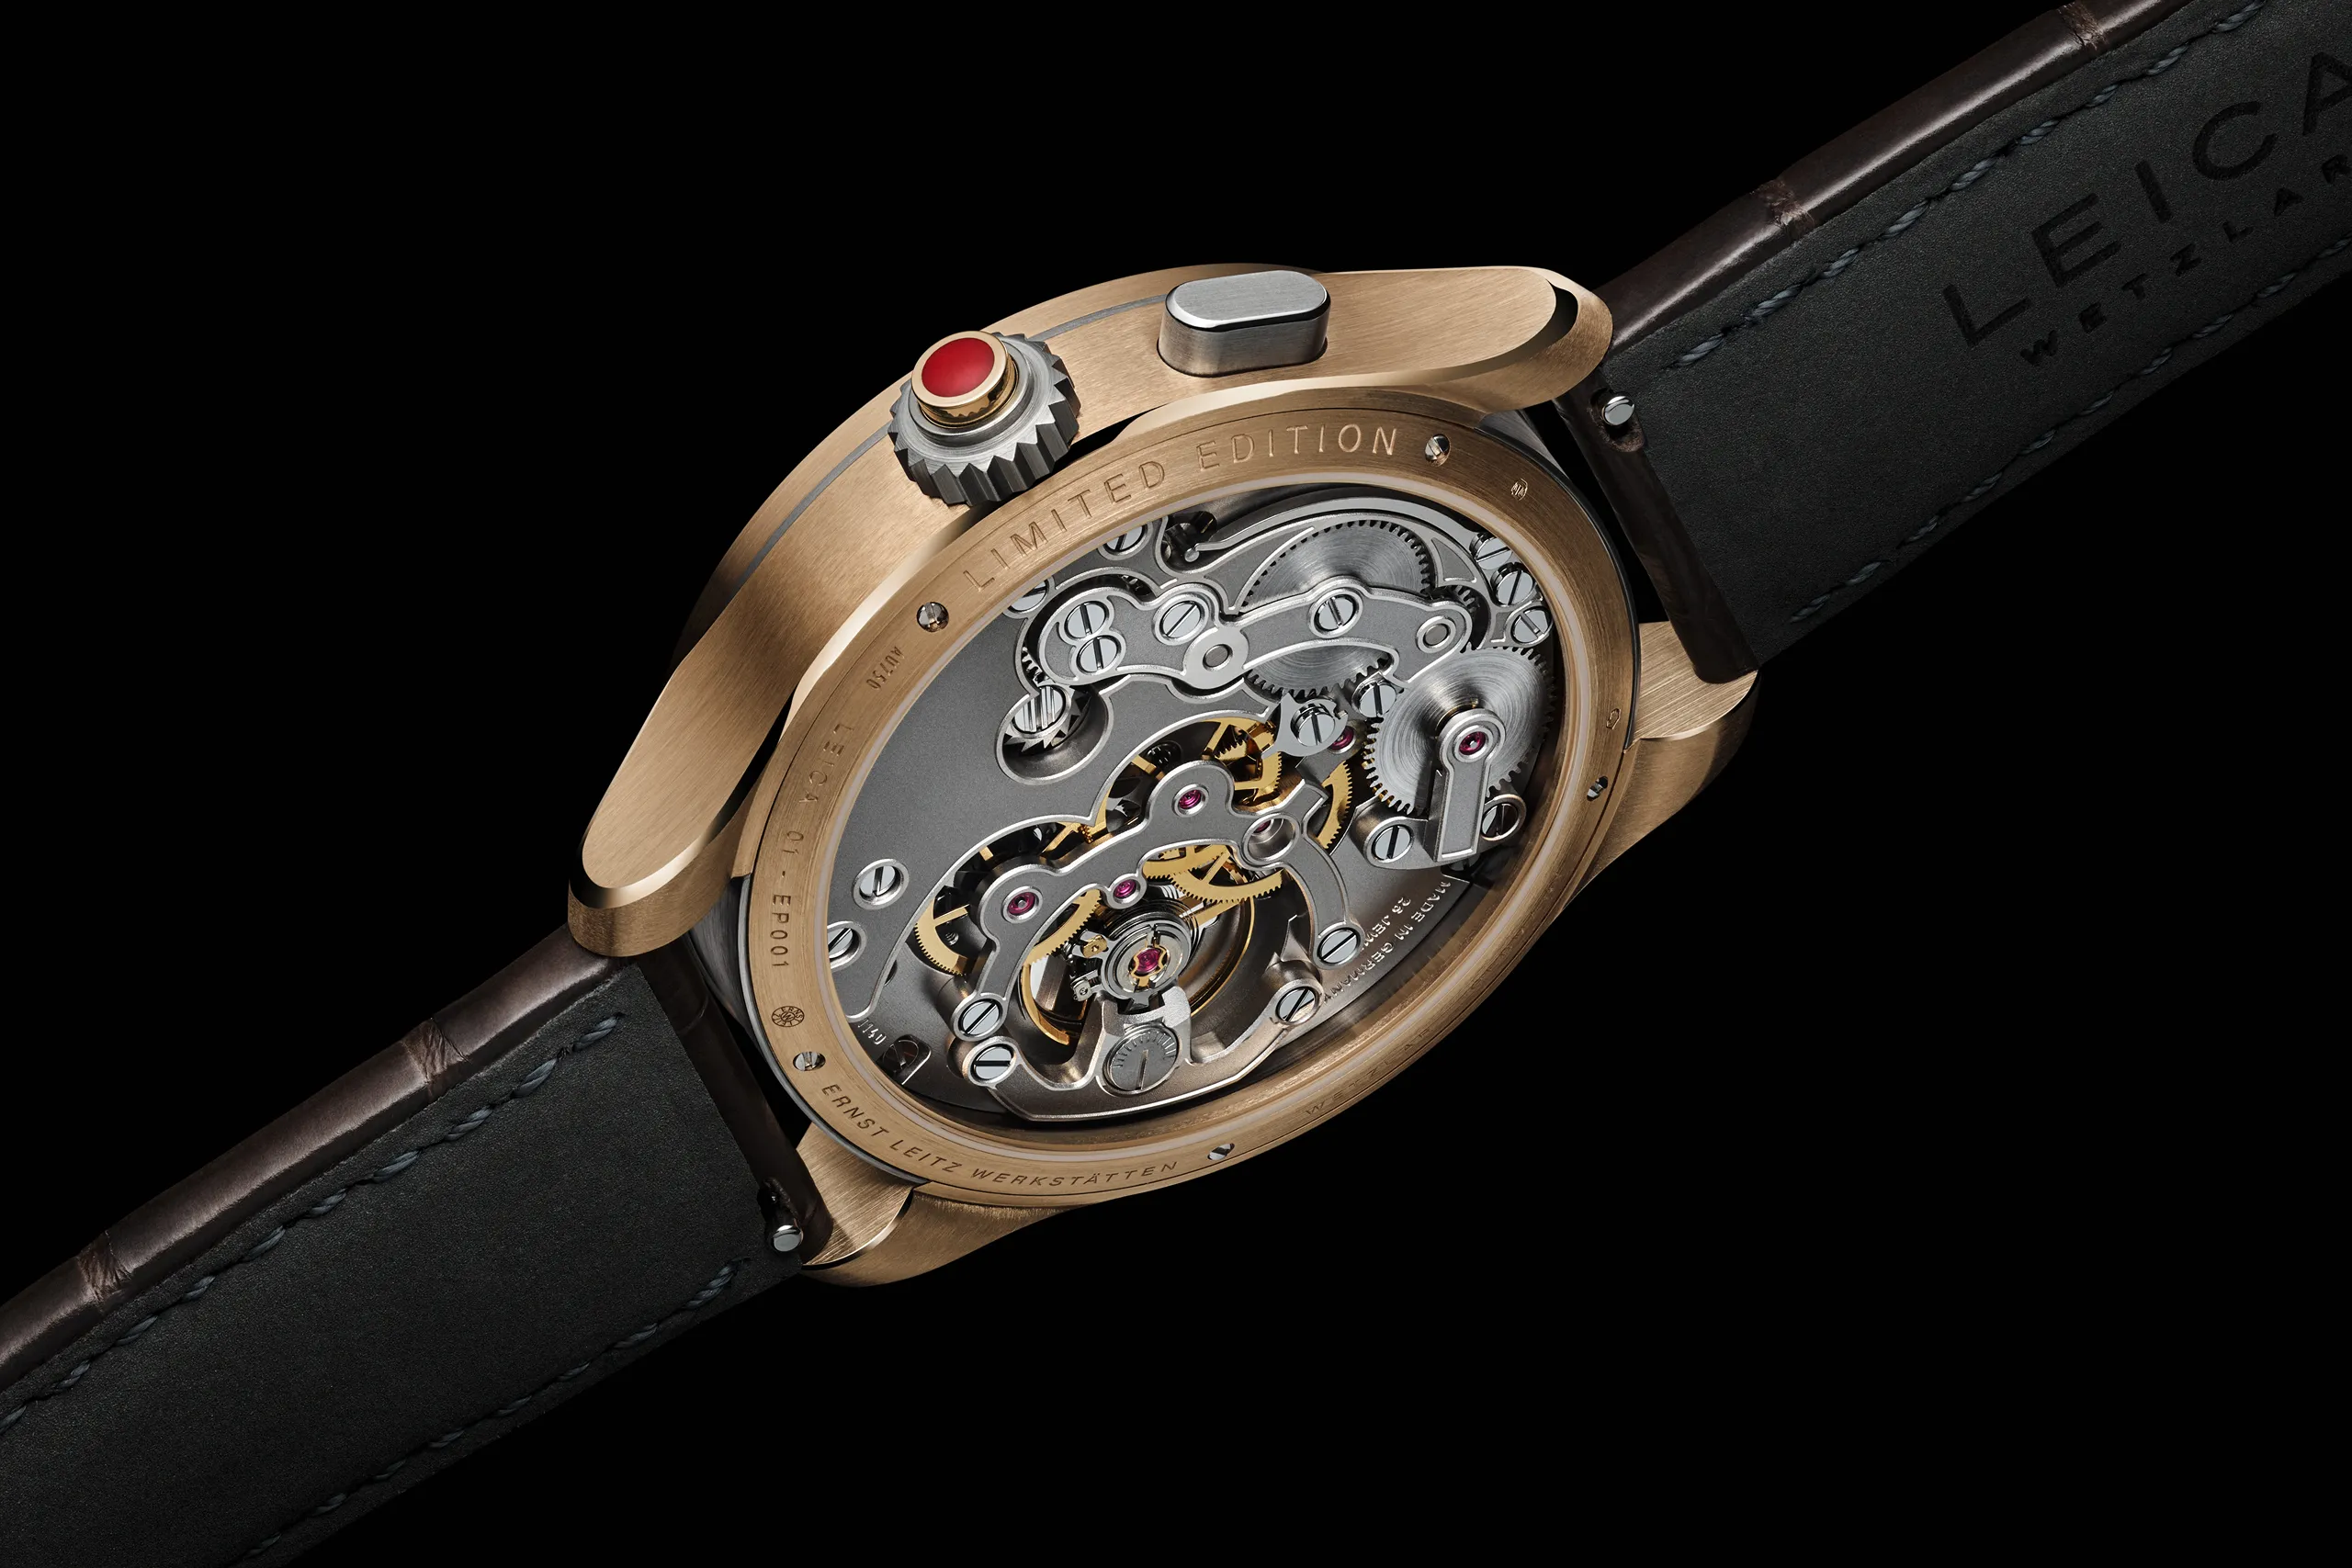 Đồng hồ Leica Watch ZM 1 Gold Limited Edition ra mắt với vẻ ngoài sang trọng, giá gần 700 triệu đồng